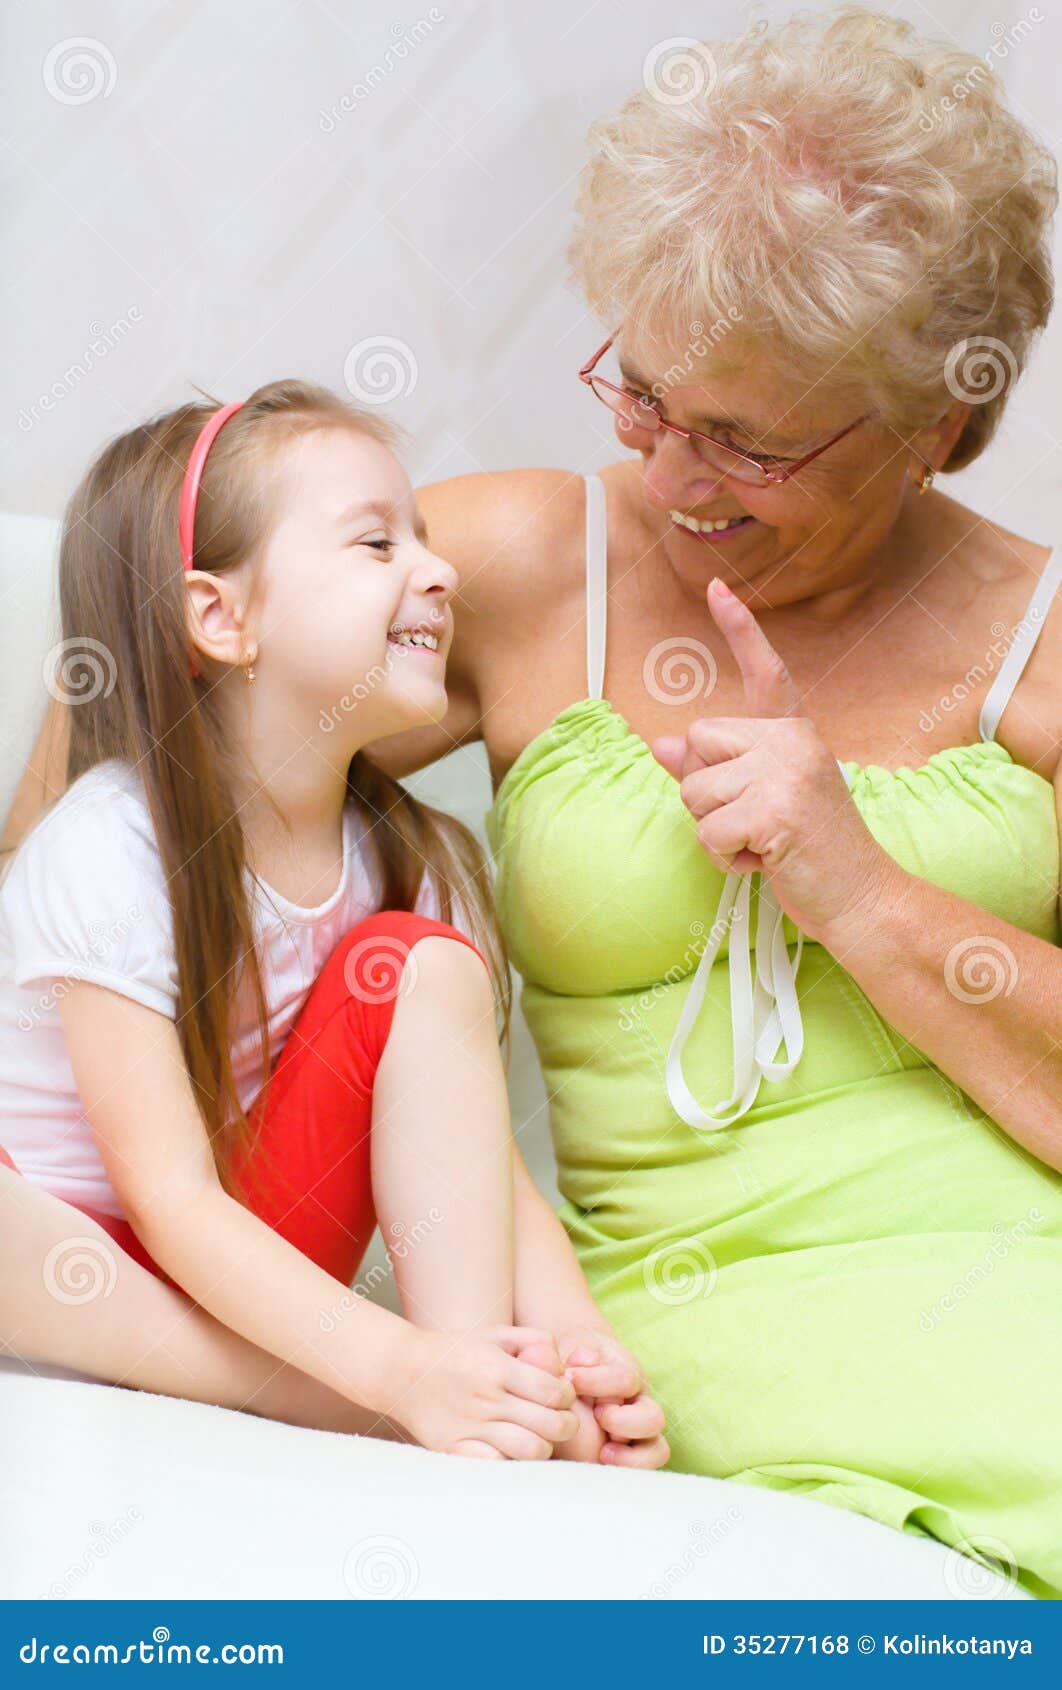 Бабка лижет внучке. Внучка полизала бабушке. Бабушка с внучкой Лесбиан. Бабушка говорит внучке.